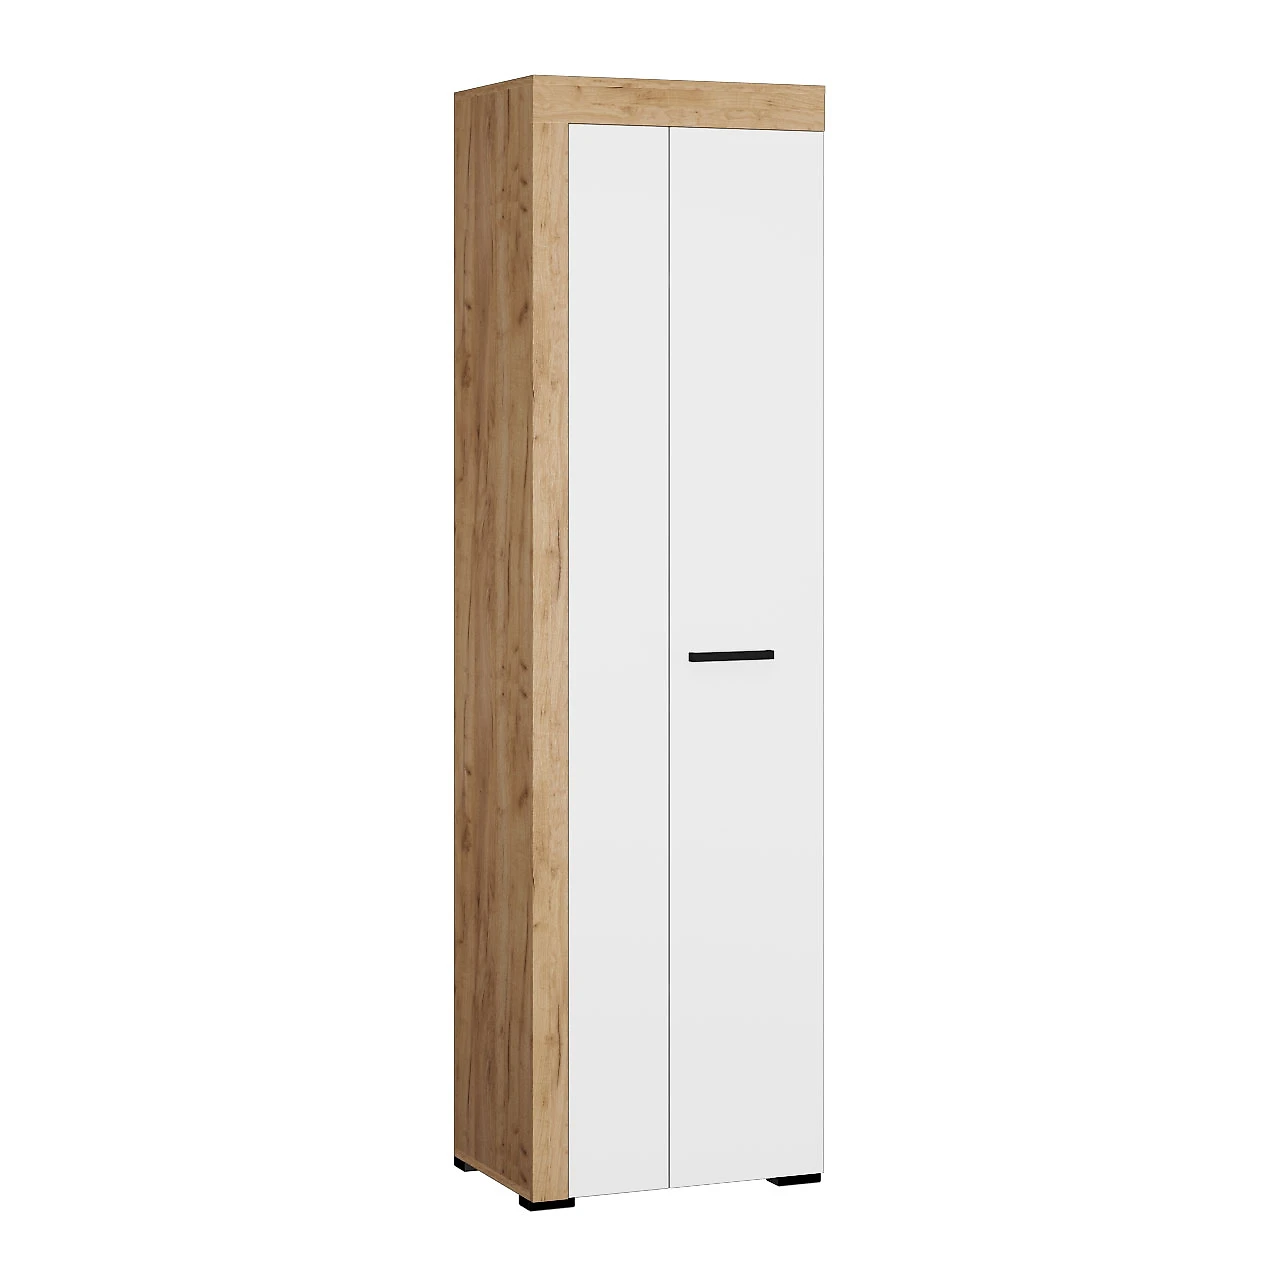 Распашной шкаф 70 см Галант Дизайн-2